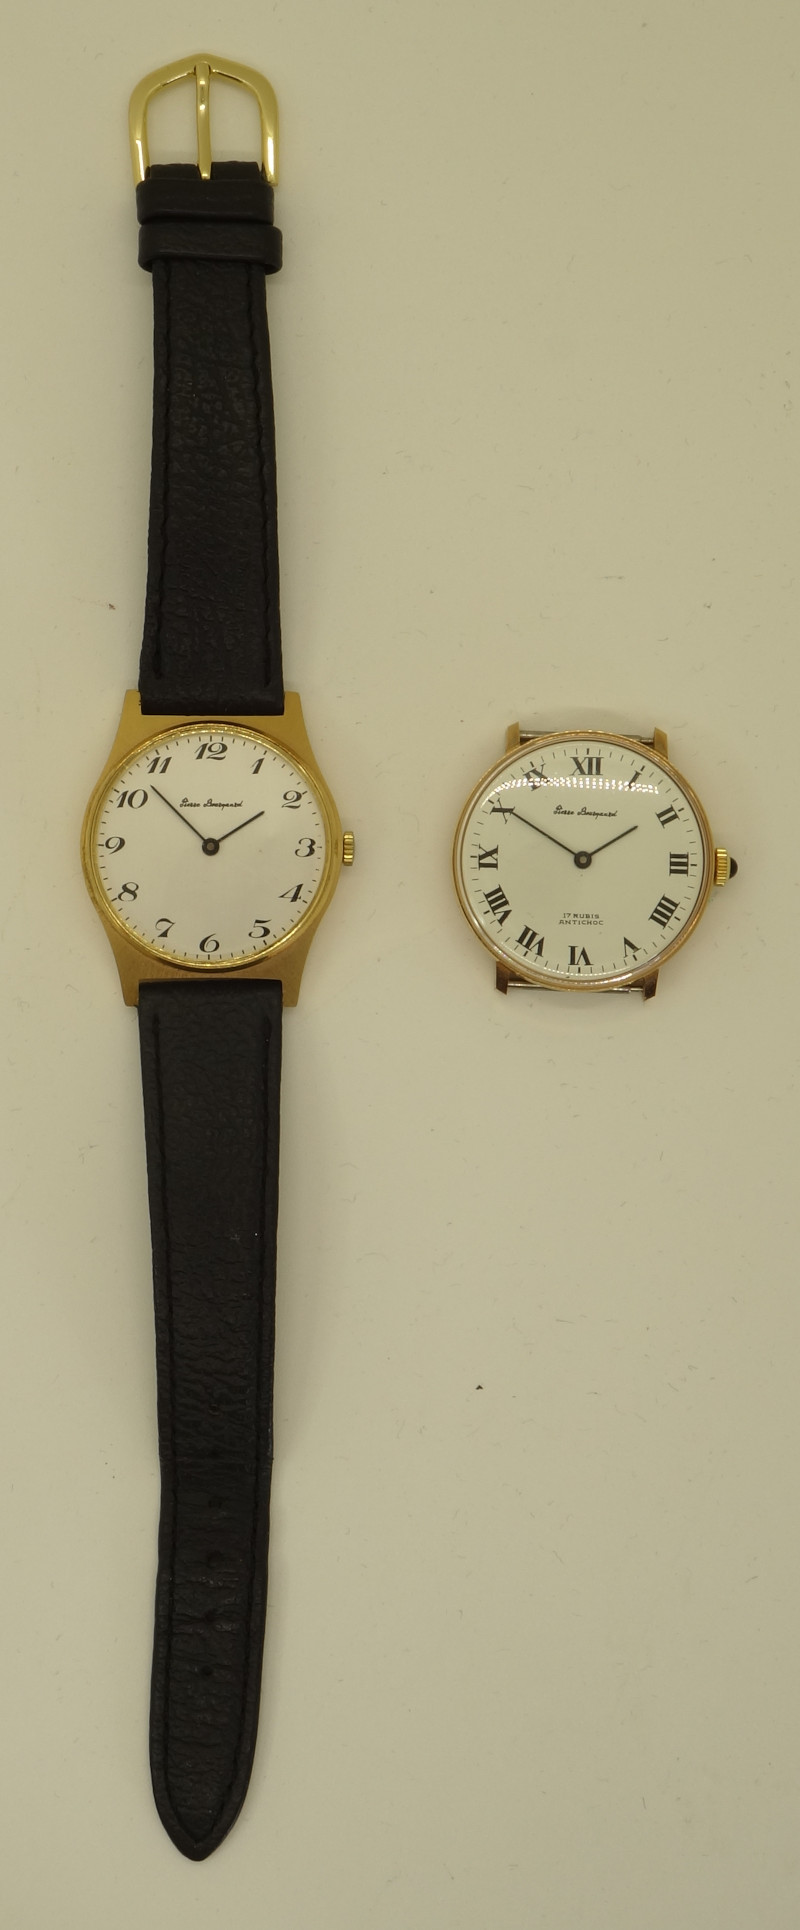 zwei Pierre Bourquard-Uhren (HB 11x)